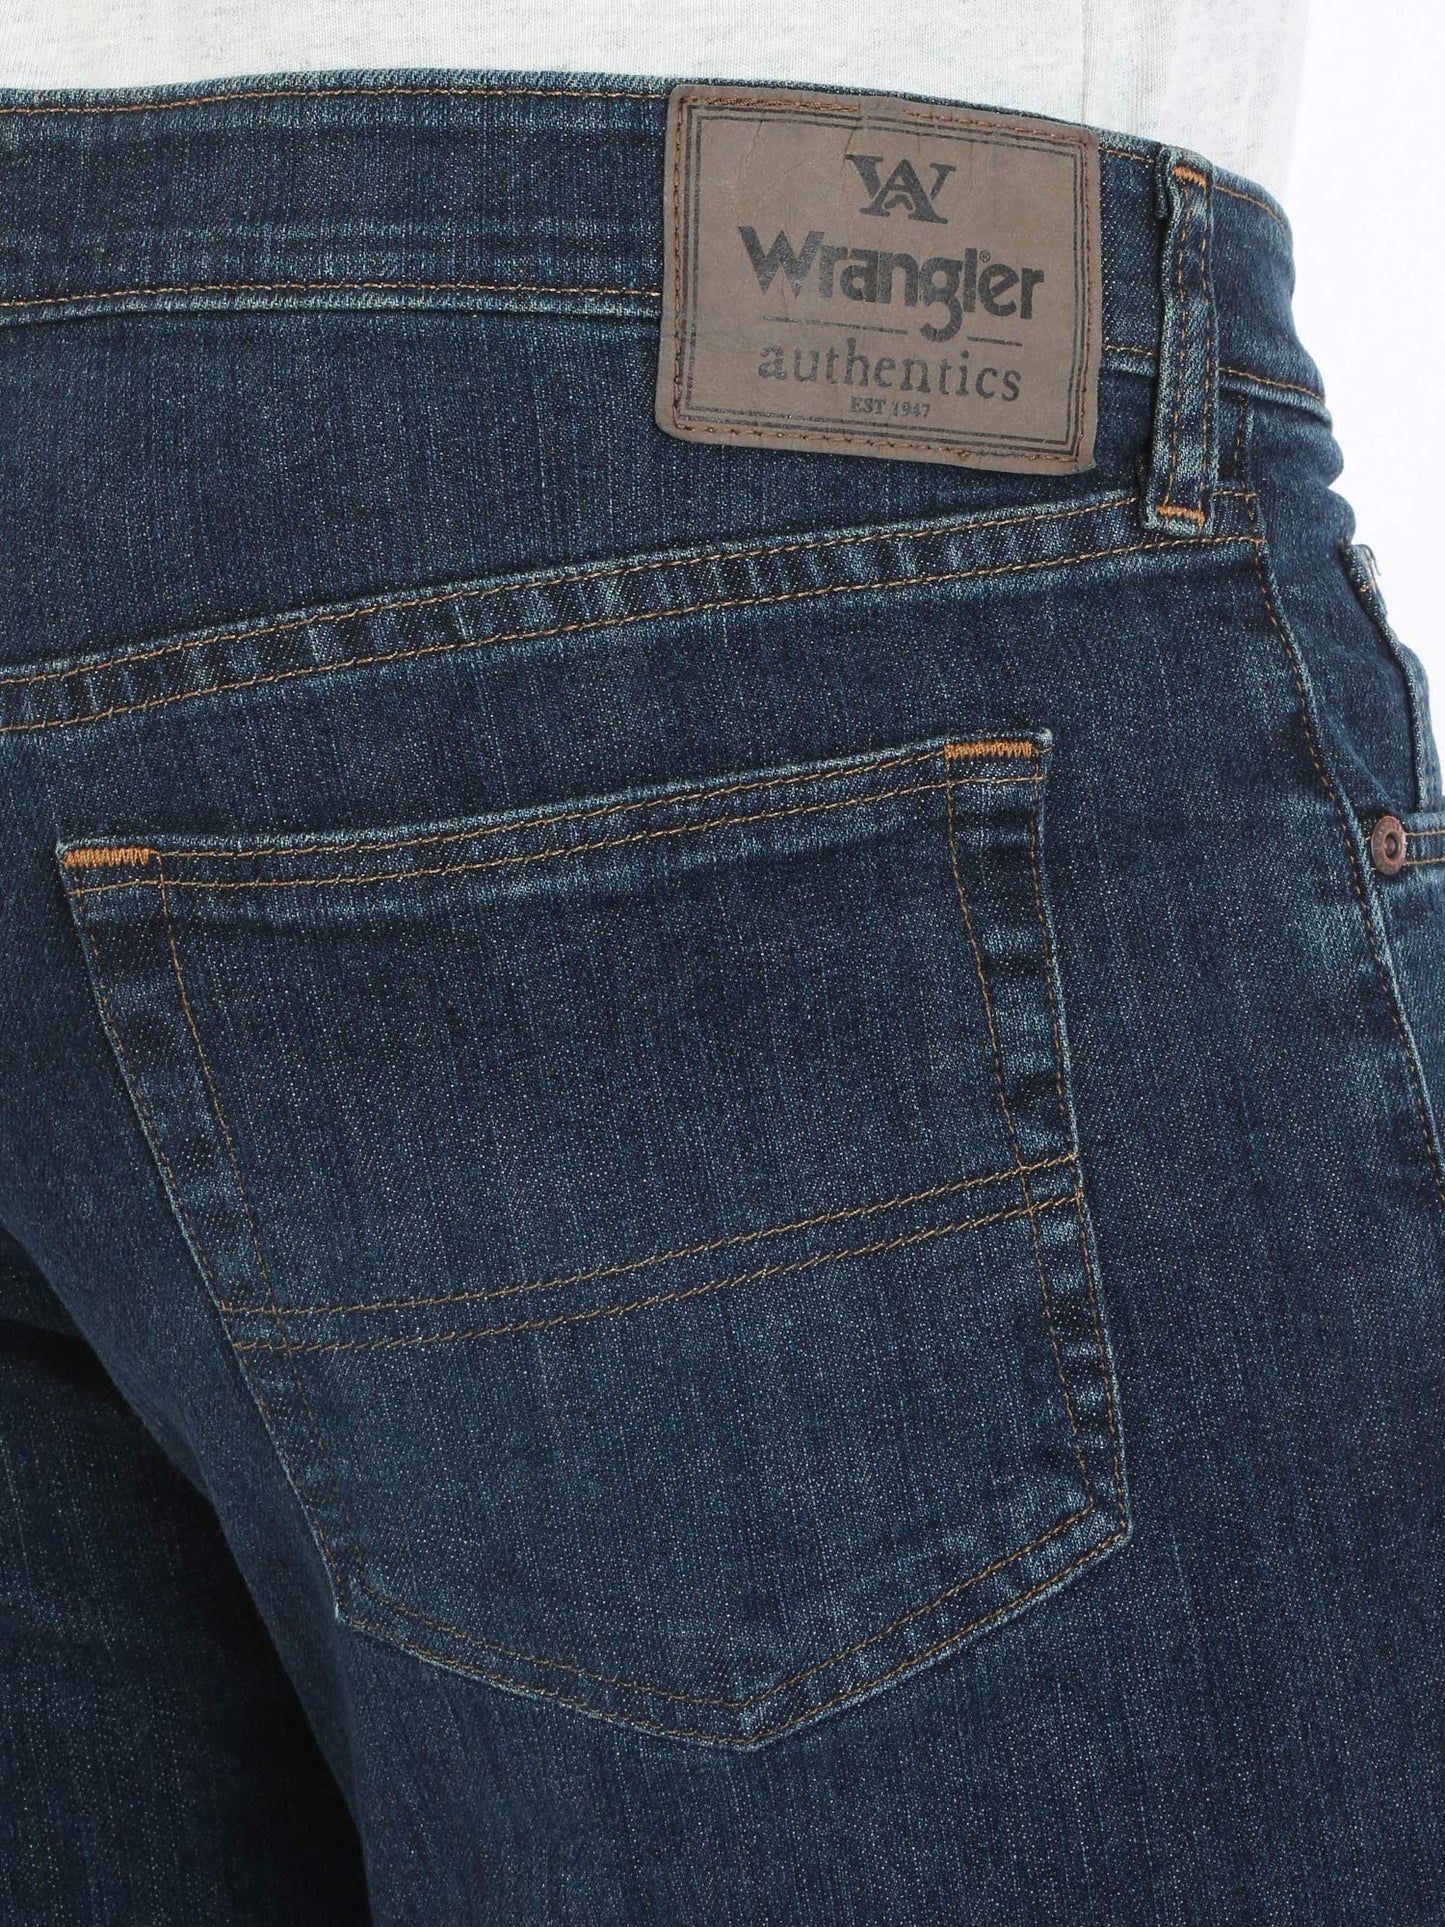 Wrangler Authentics Men's Comfort Flex Waist Relaxed Fit Jean, Carbon, 34W x 32L